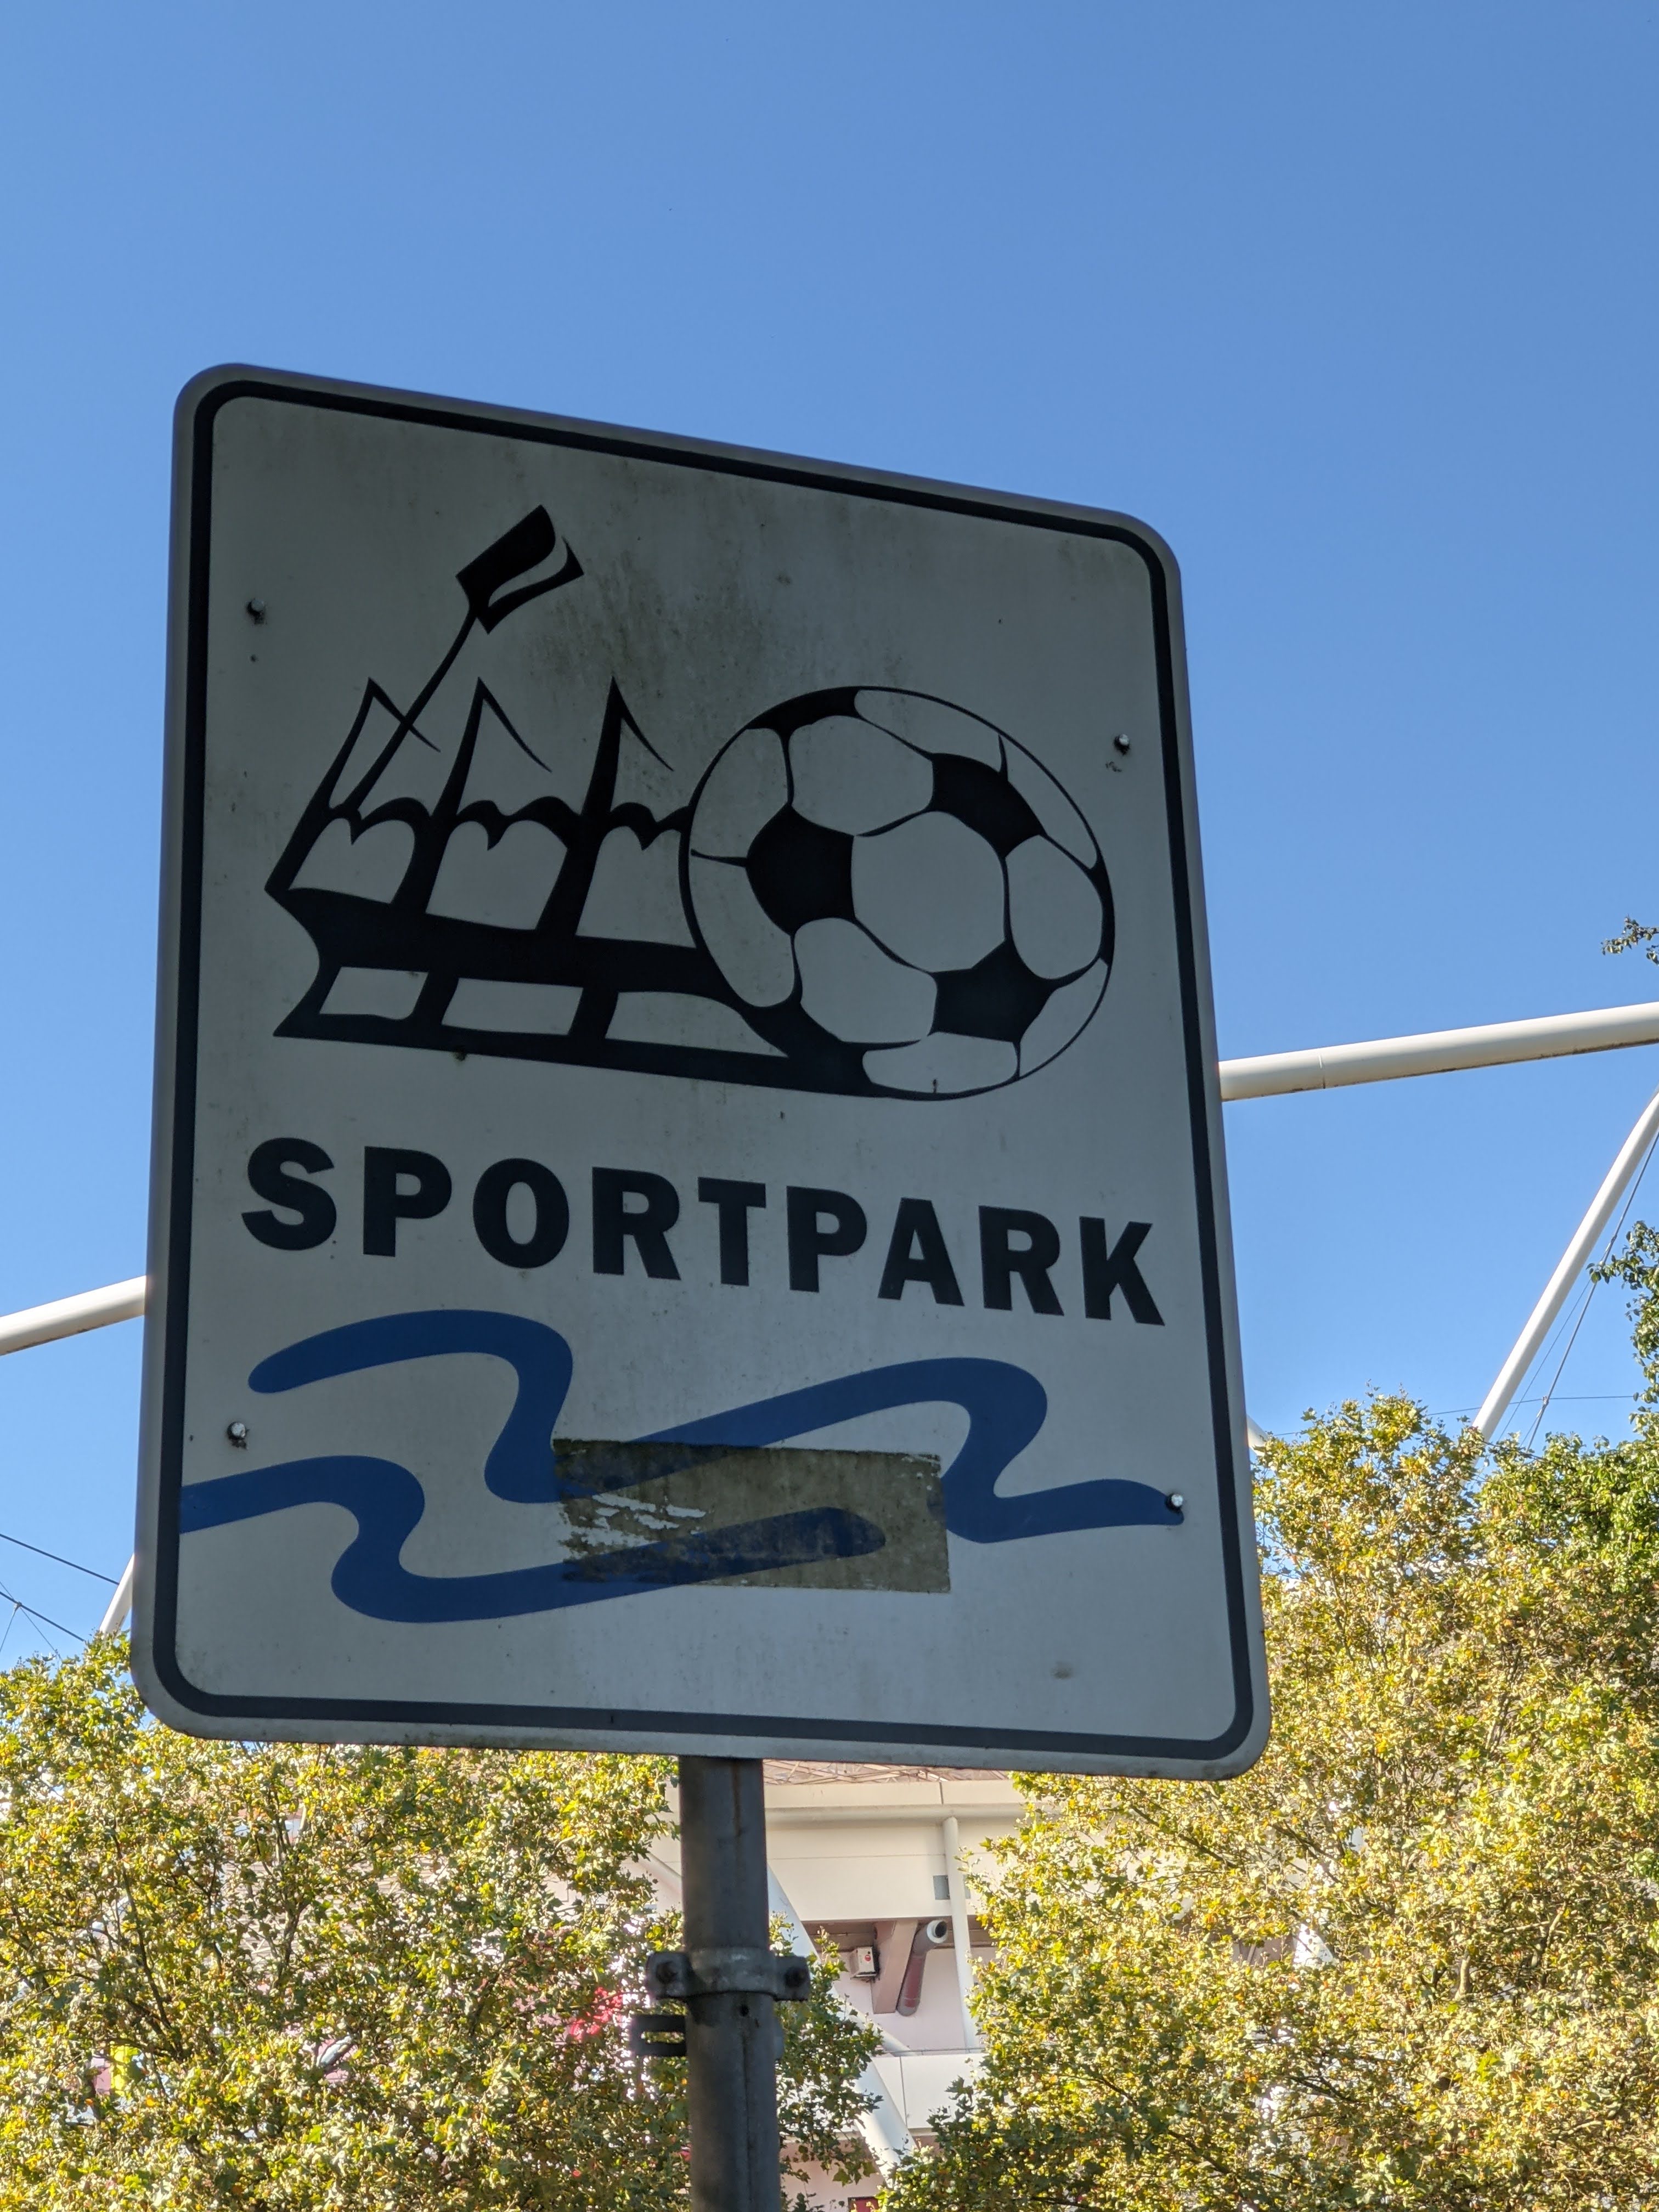 Ein Schild mit dem Schriftzug "Sportpark". Auf dem Schild ist auch ein Stadion und ein Fußball abgebildet.